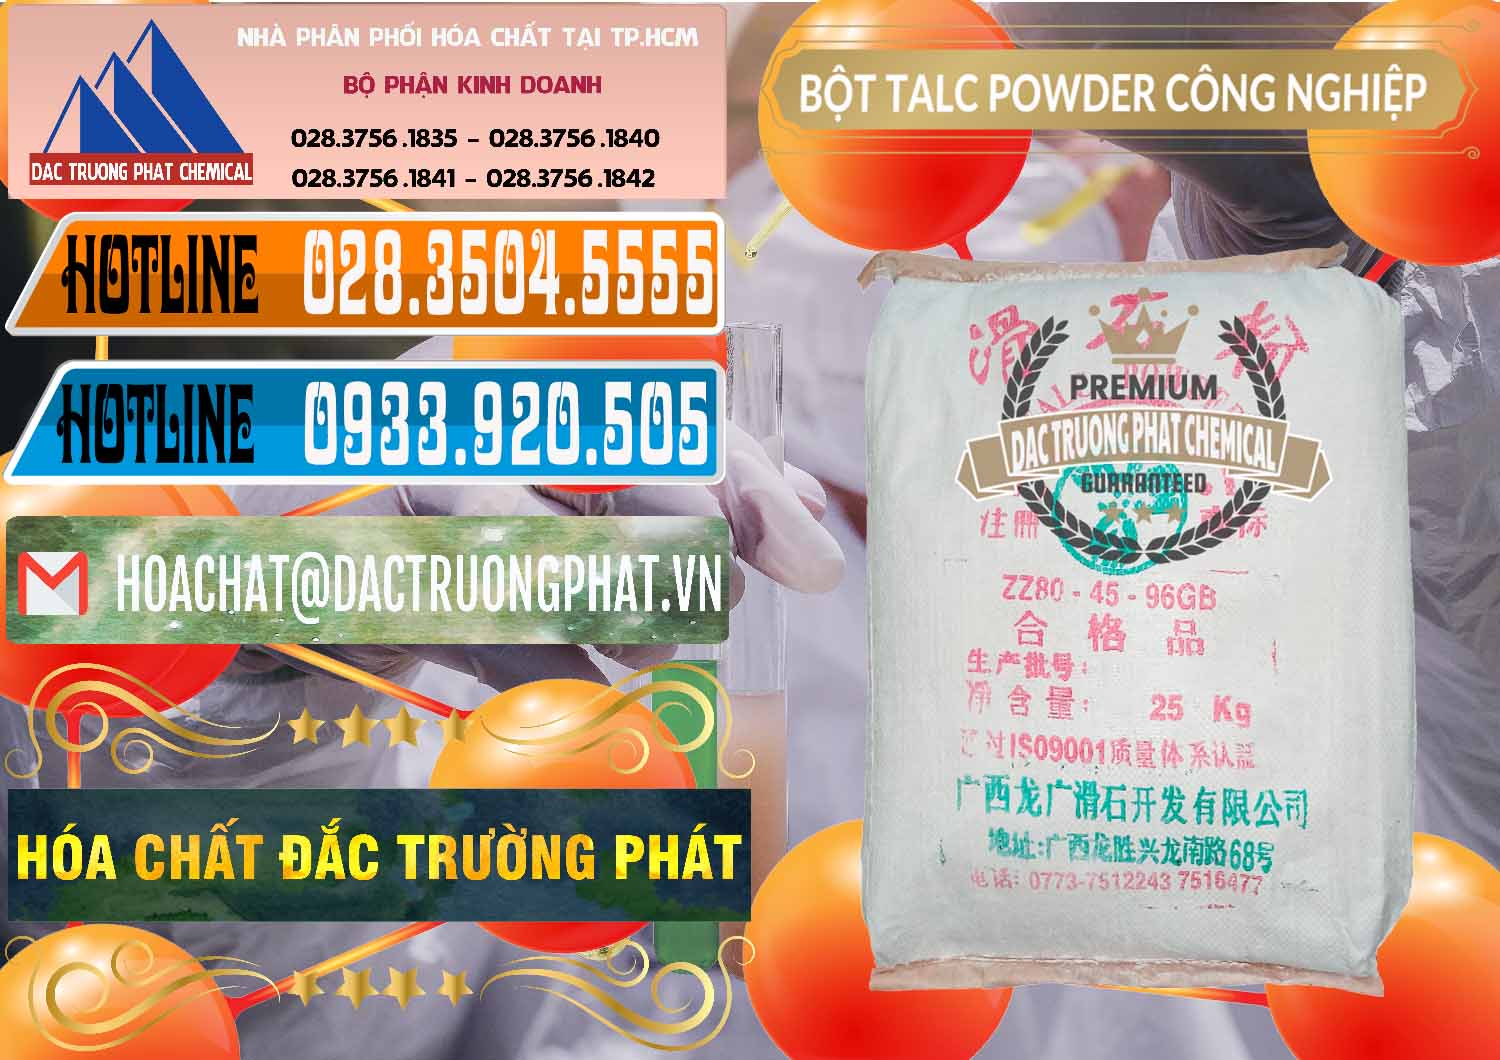 Chuyên cung ứng - bán Bột Talc Powder Công Nghiệp Trung Quốc China - 0037 - Nhà cung cấp & nhập khẩu hóa chất tại TP.HCM - stmp.net